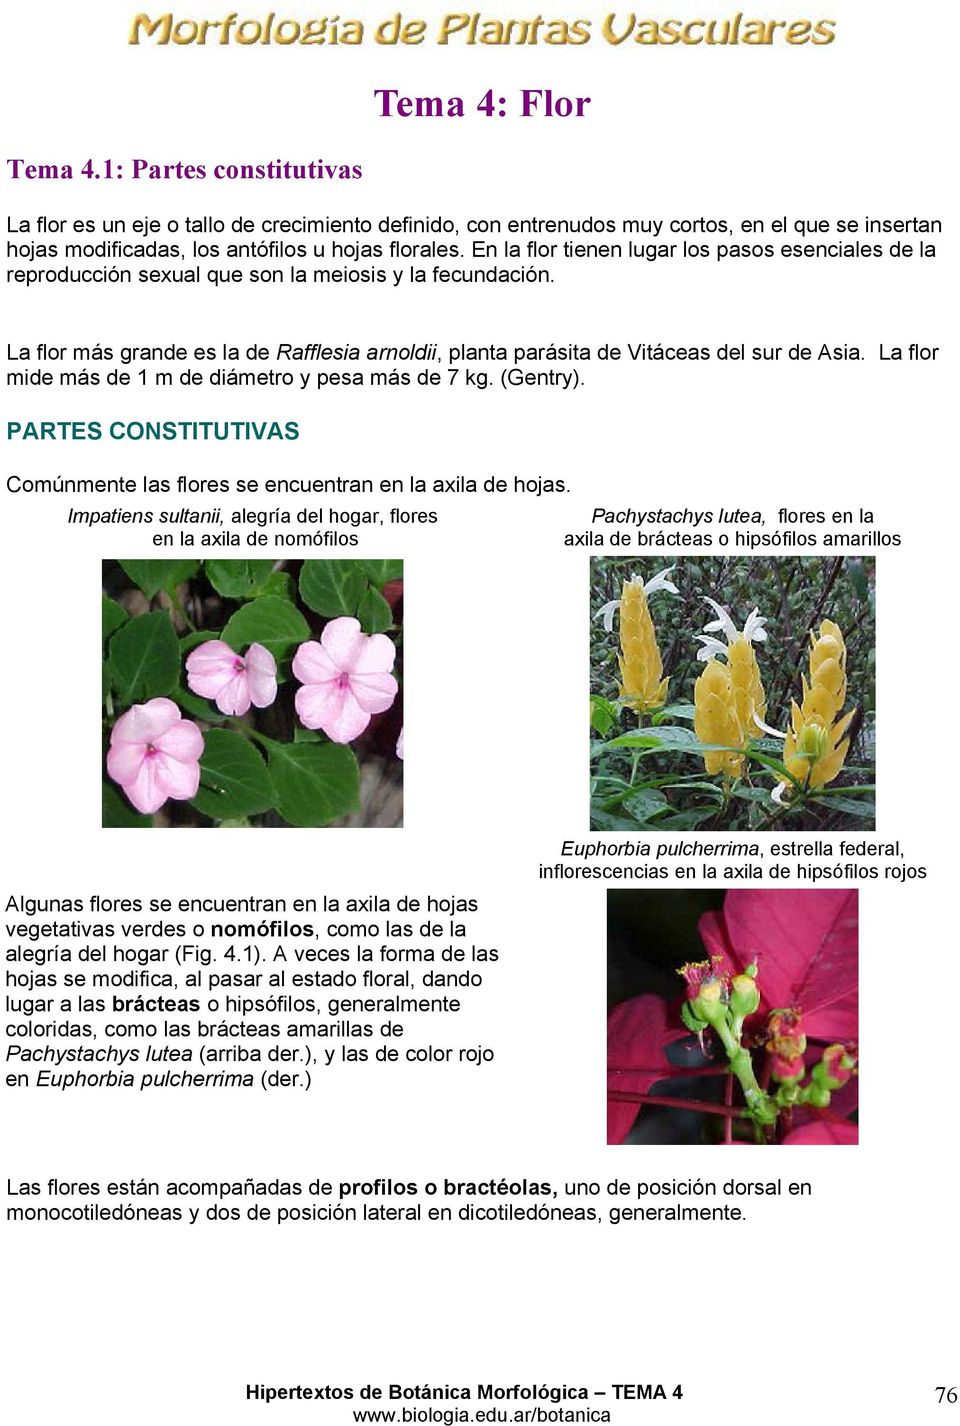 Tema 4: Flor. Tema : Partes constitutivas PARTES CONSTITUTIVAS - PDF  Free Download